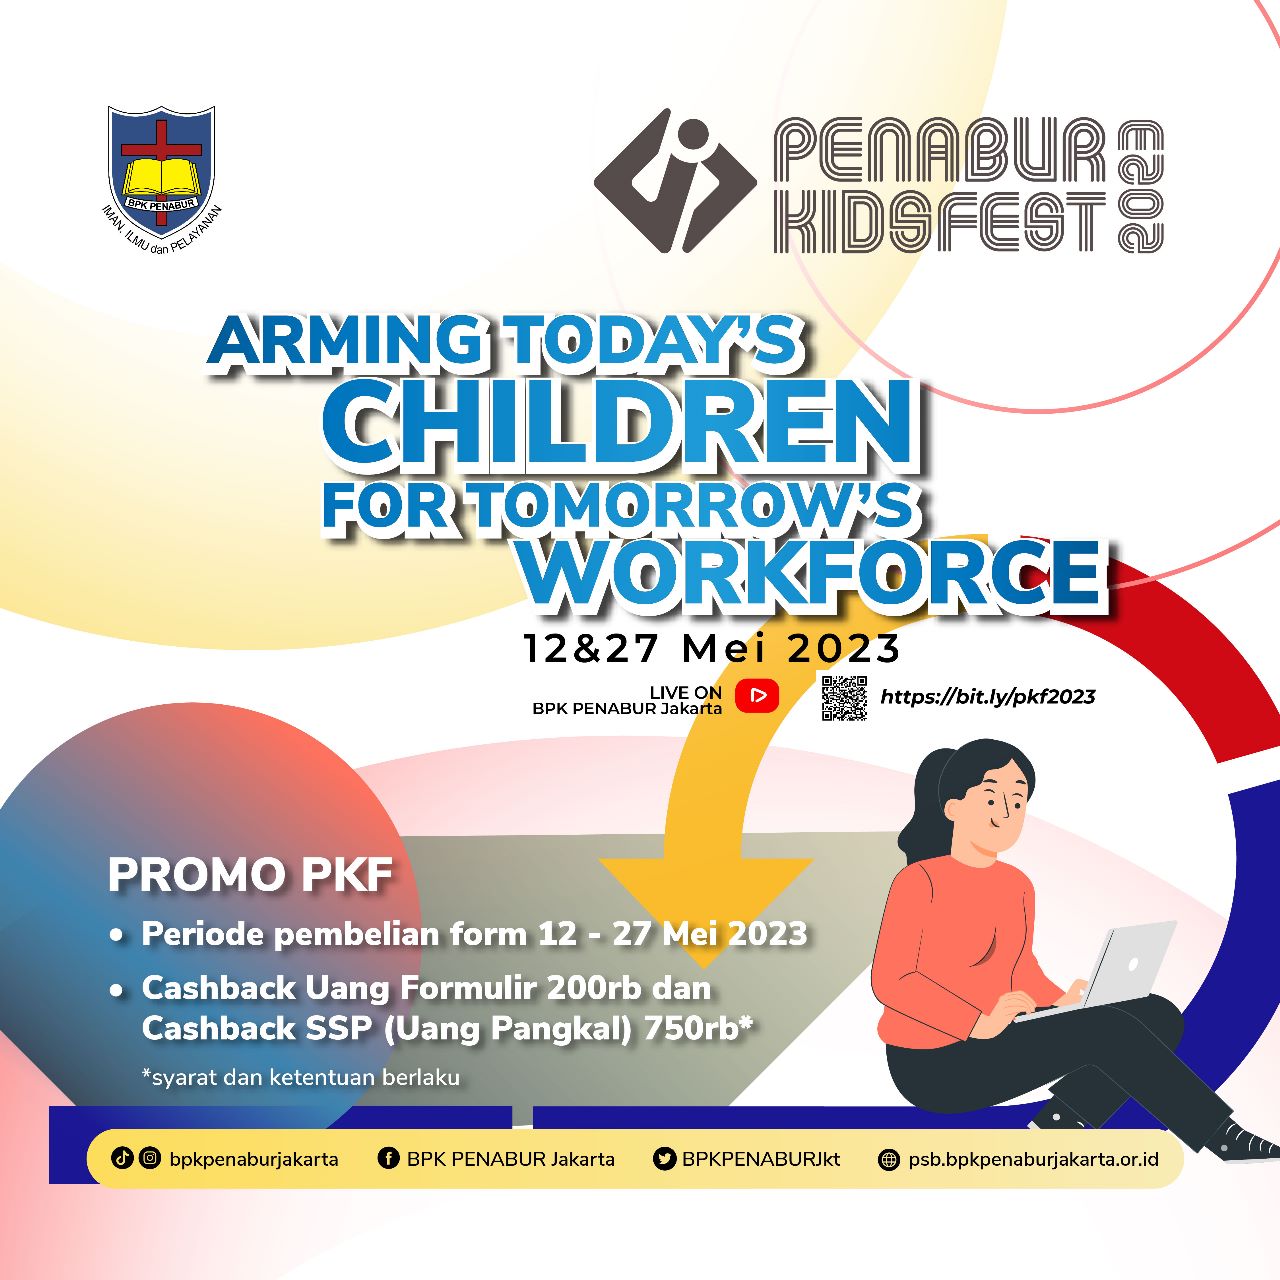 PENABUR Kids Festival 2023